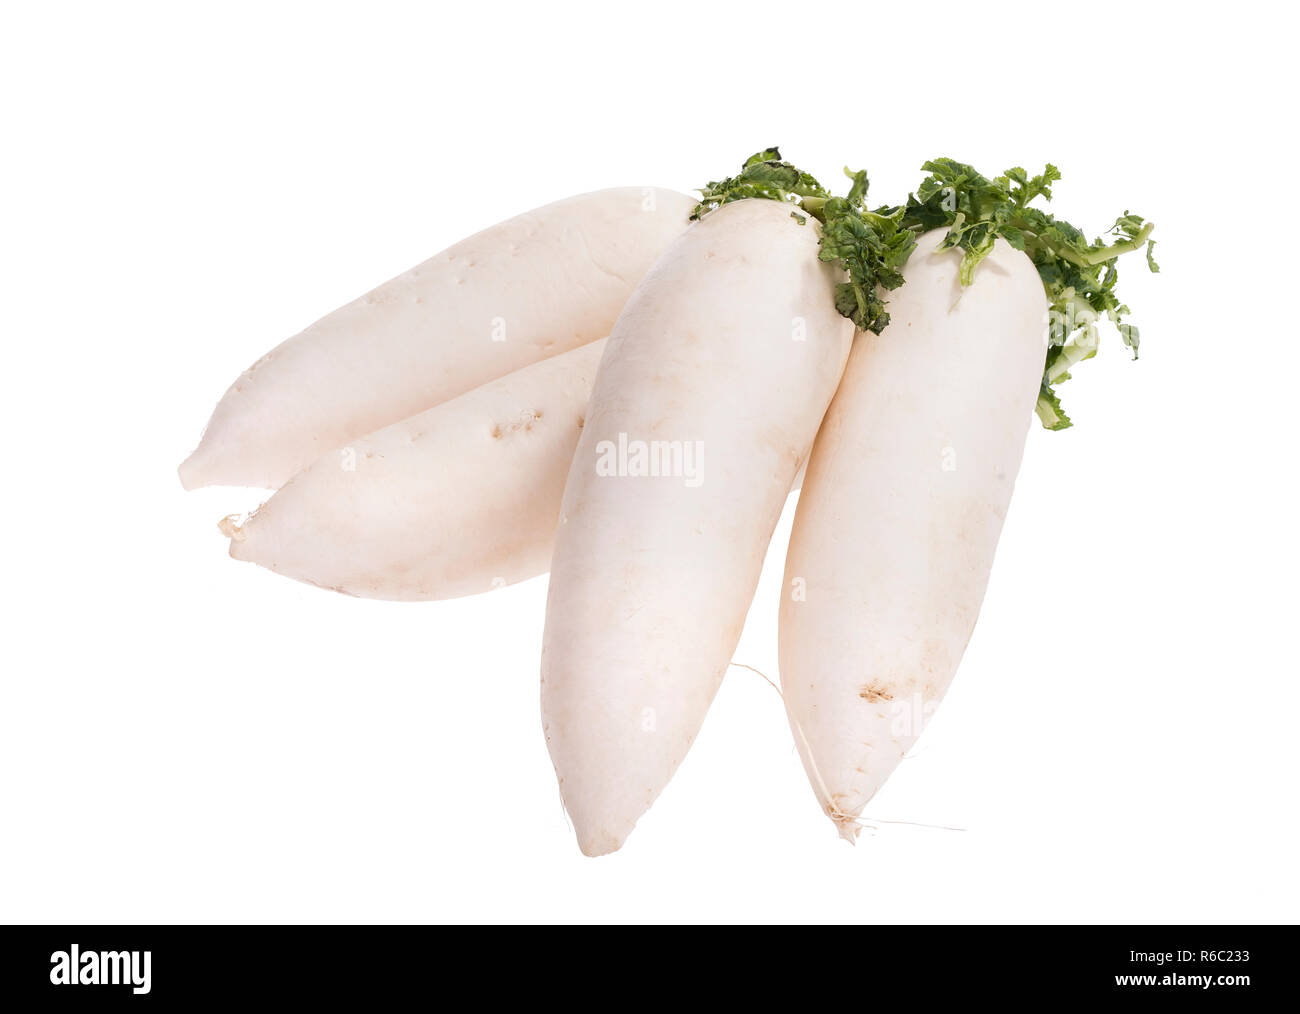 Daikon radishes isolated on white background Stock Photo